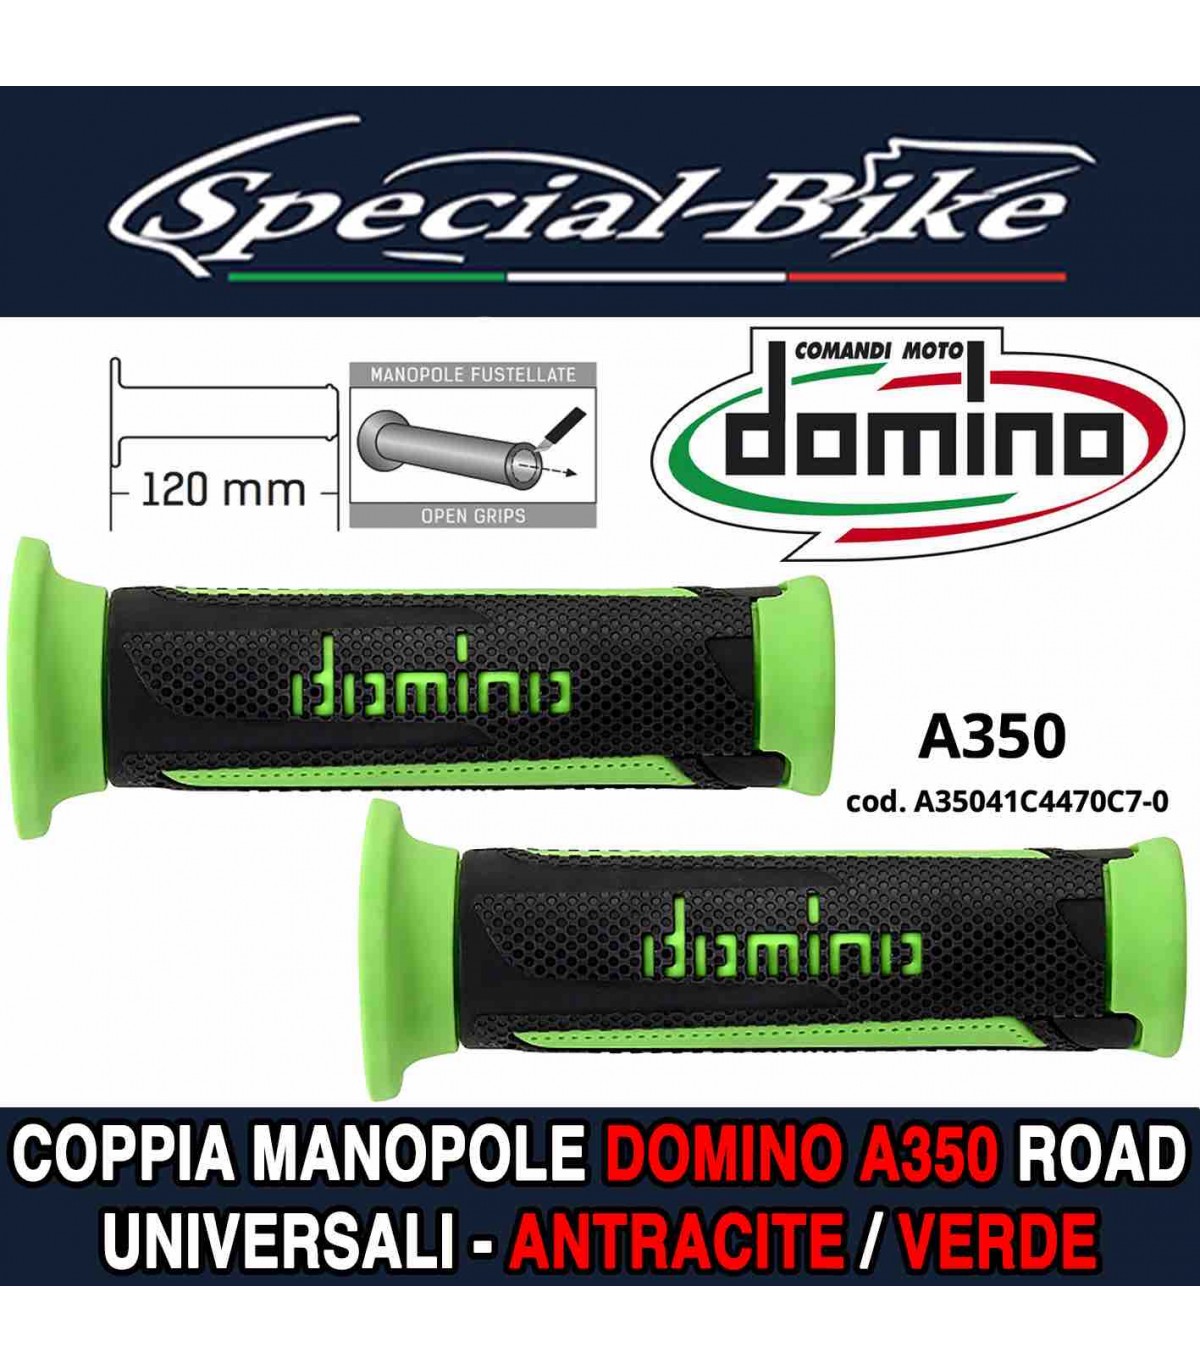 Coppia Manopole Domino A350 Road per Moto Scooter Antracite Verde